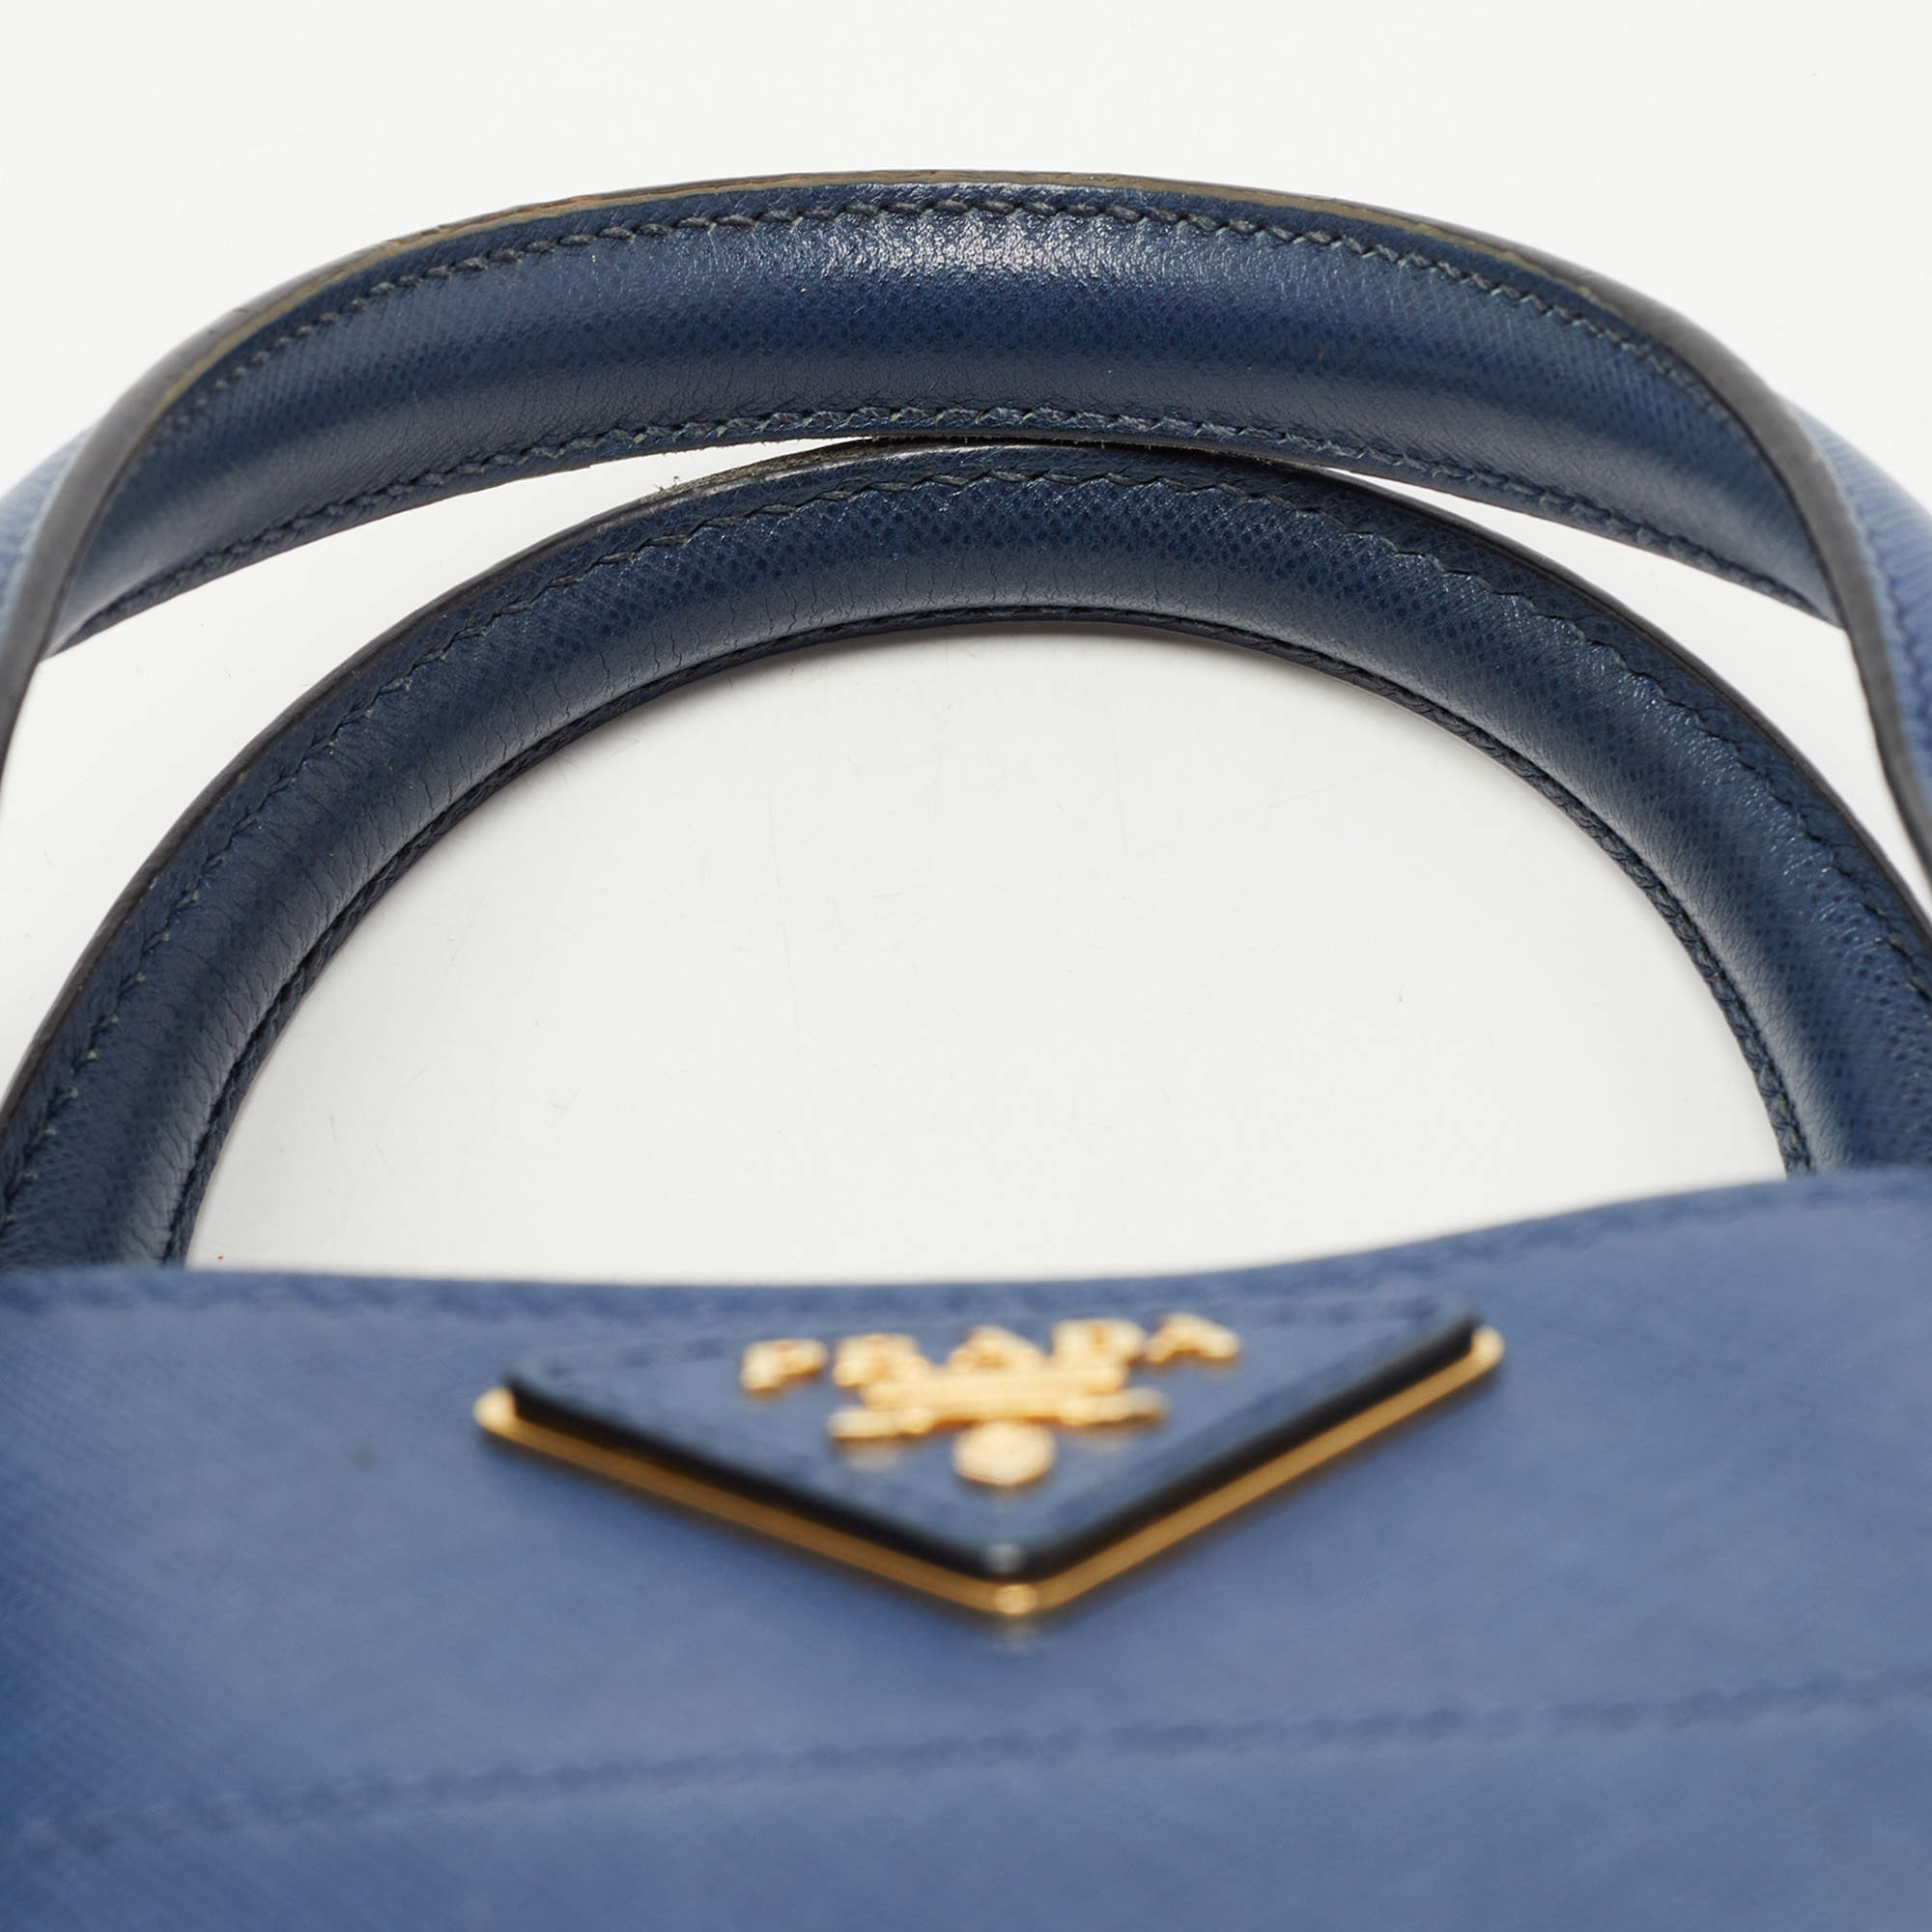 Prada Grey Saffiano Convertible Handbag QNBFLV3REB003